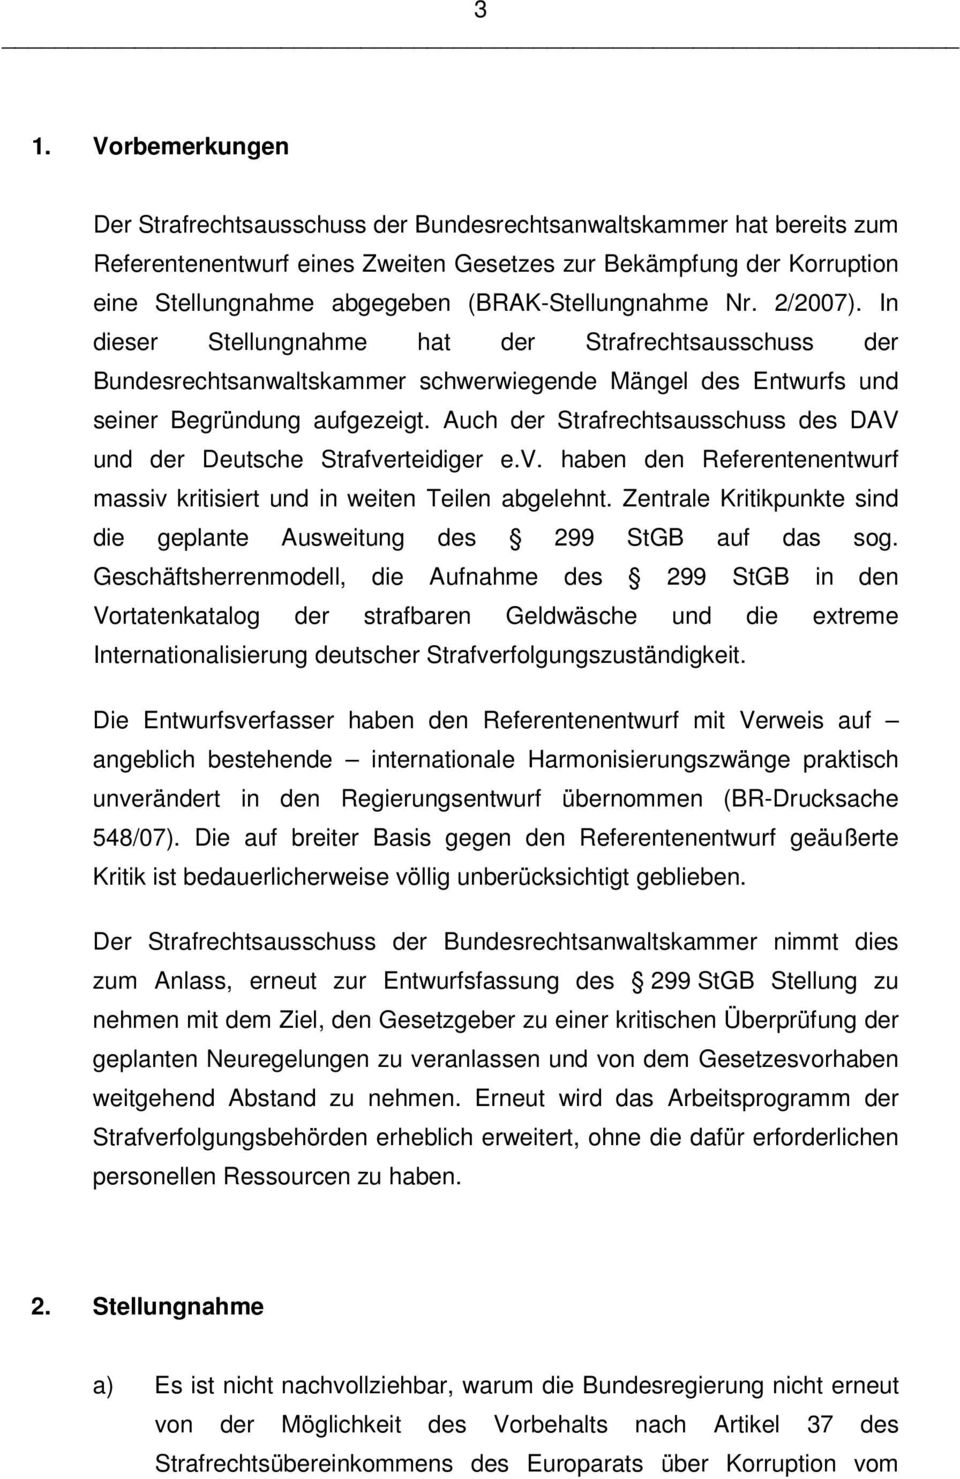 Auch der Strafrechtsausschuss des DAV und der Deutsche Strafverteidiger e.v. haben den Referentenentwurf massiv kritisiert und in weiten Teilen abgelehnt.